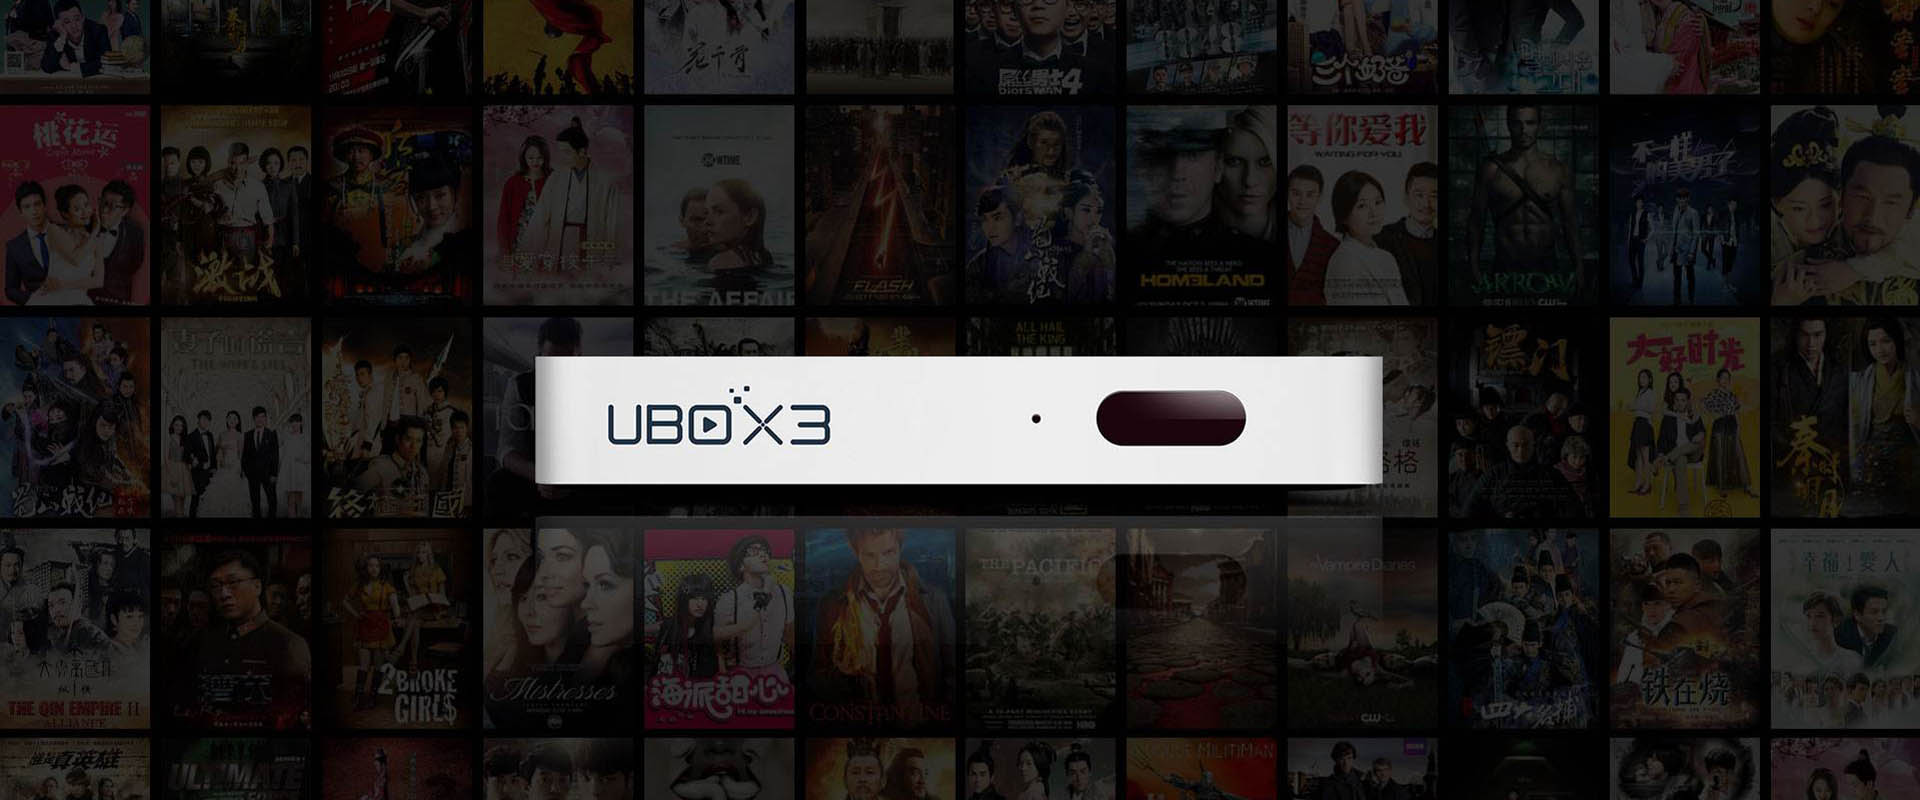 TV Box UBOX 3 - Manood ng Libreng Mga Palabas sa TV mula sa Mainland ng China